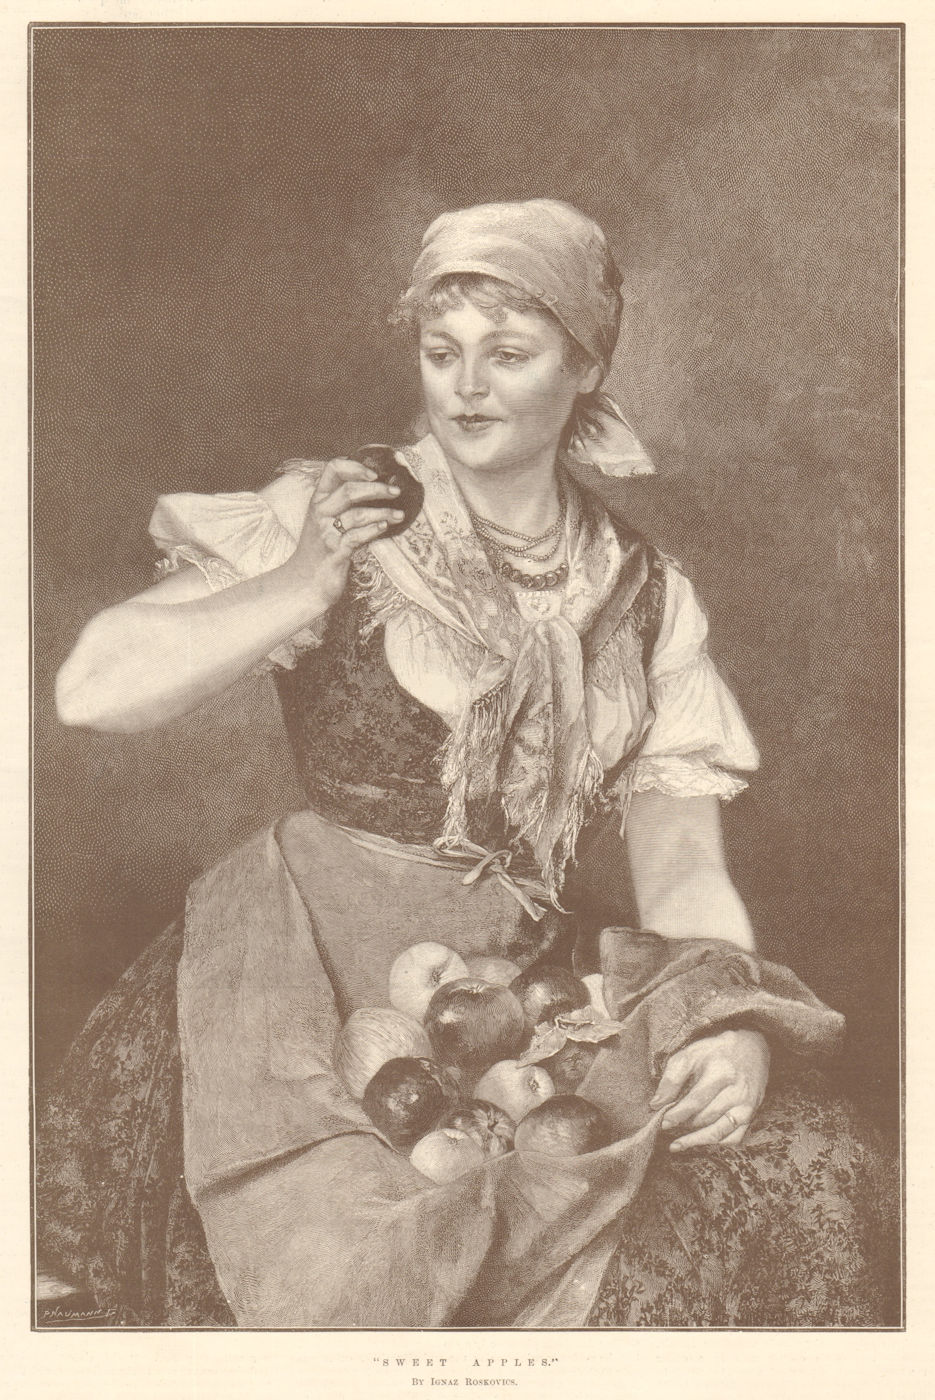 Associate Product "Sweet apples", by Ignaz Roskovics. Pretty Ladies. Fruit 1892 old print